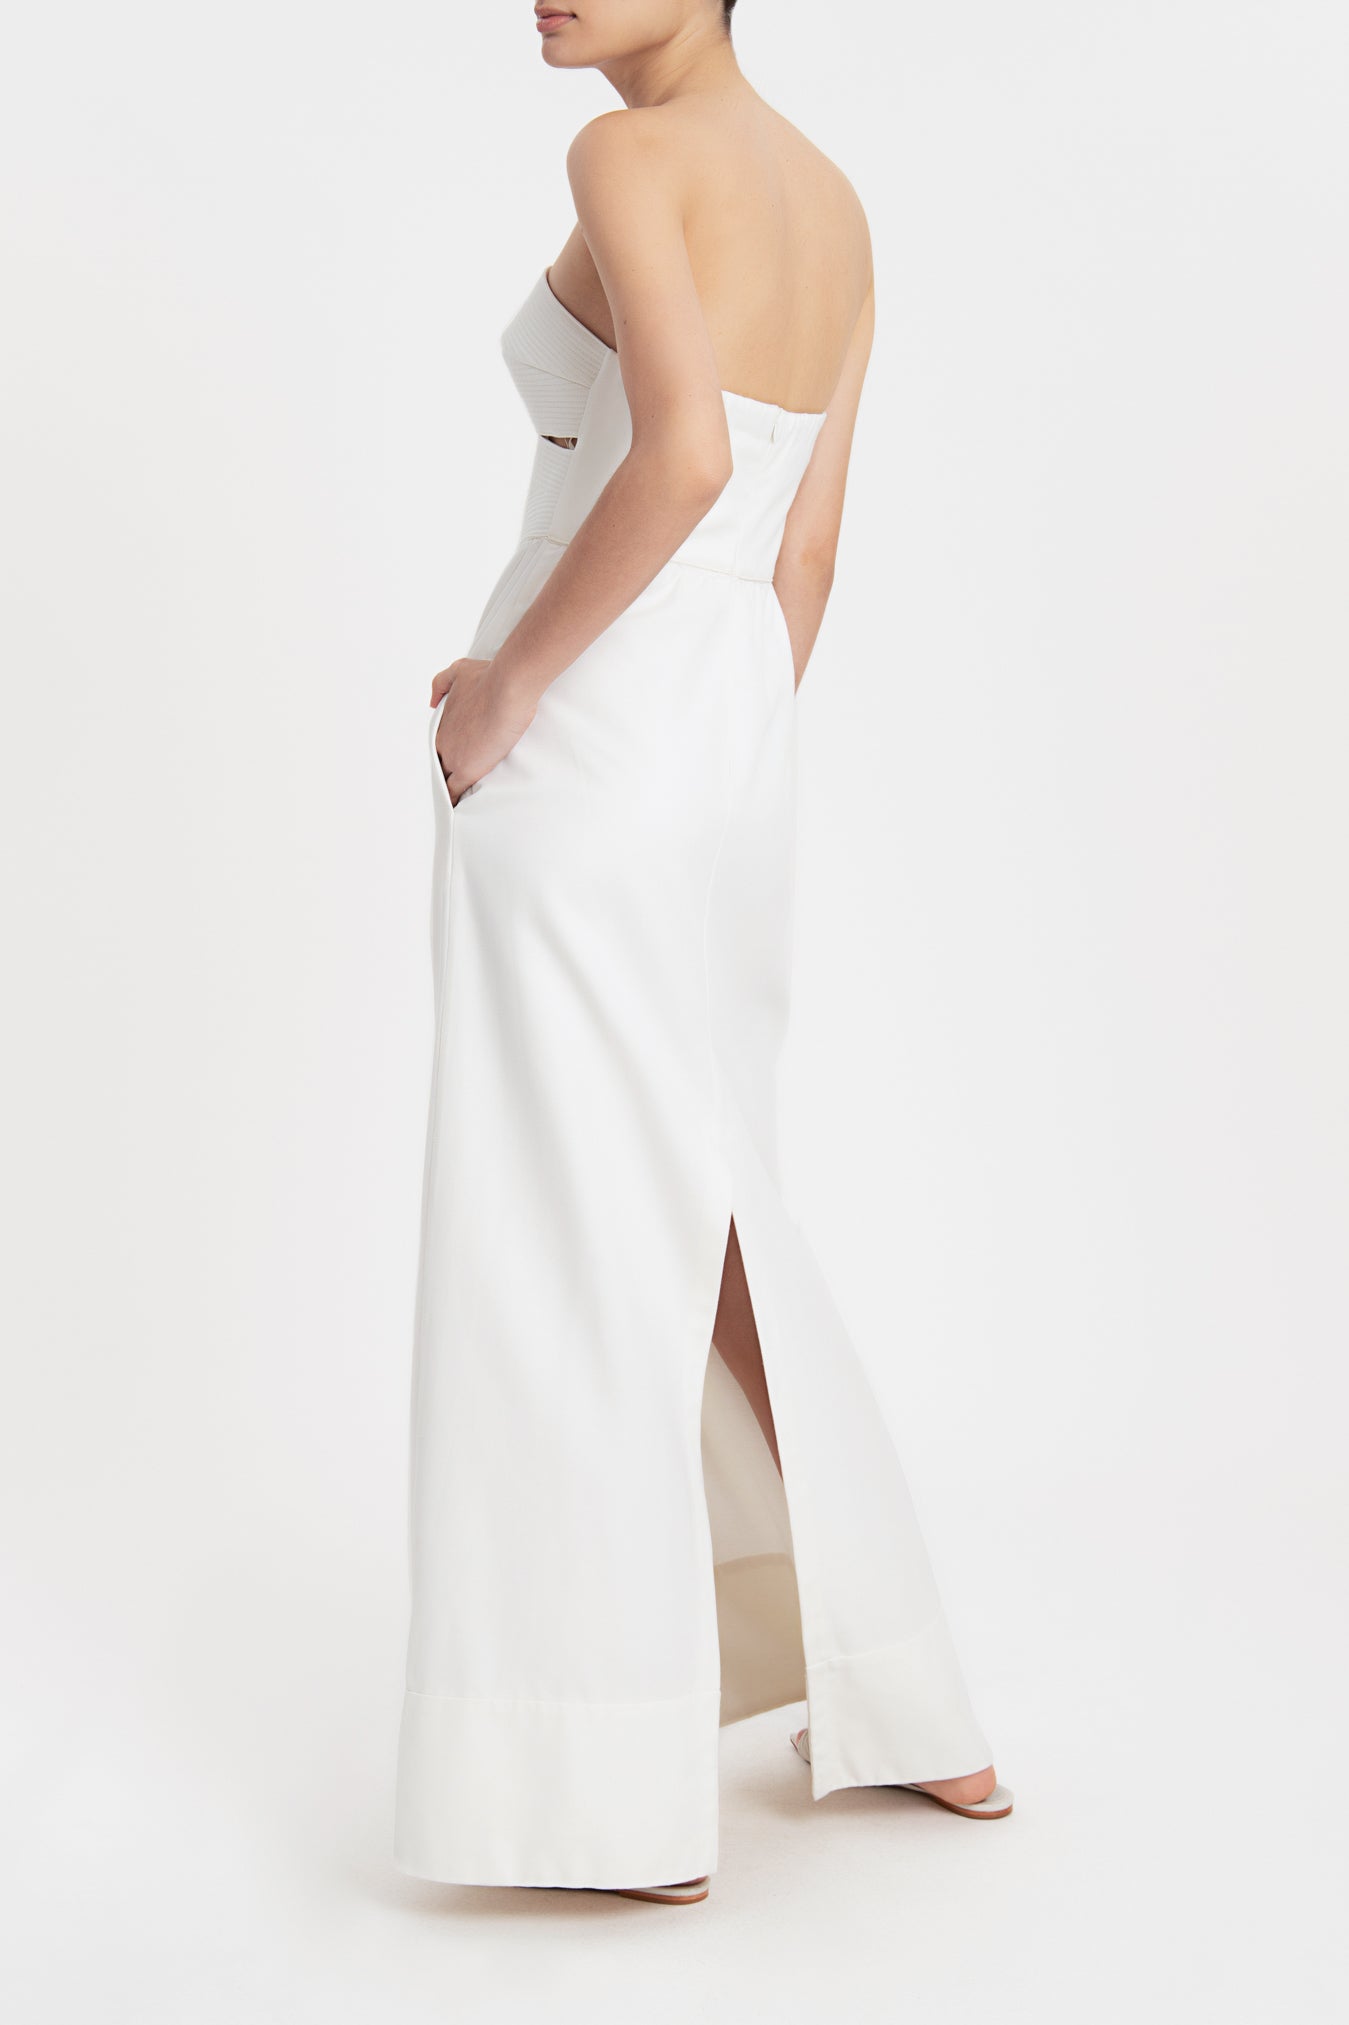 Matelasse Strapless Long Dress Off White Back